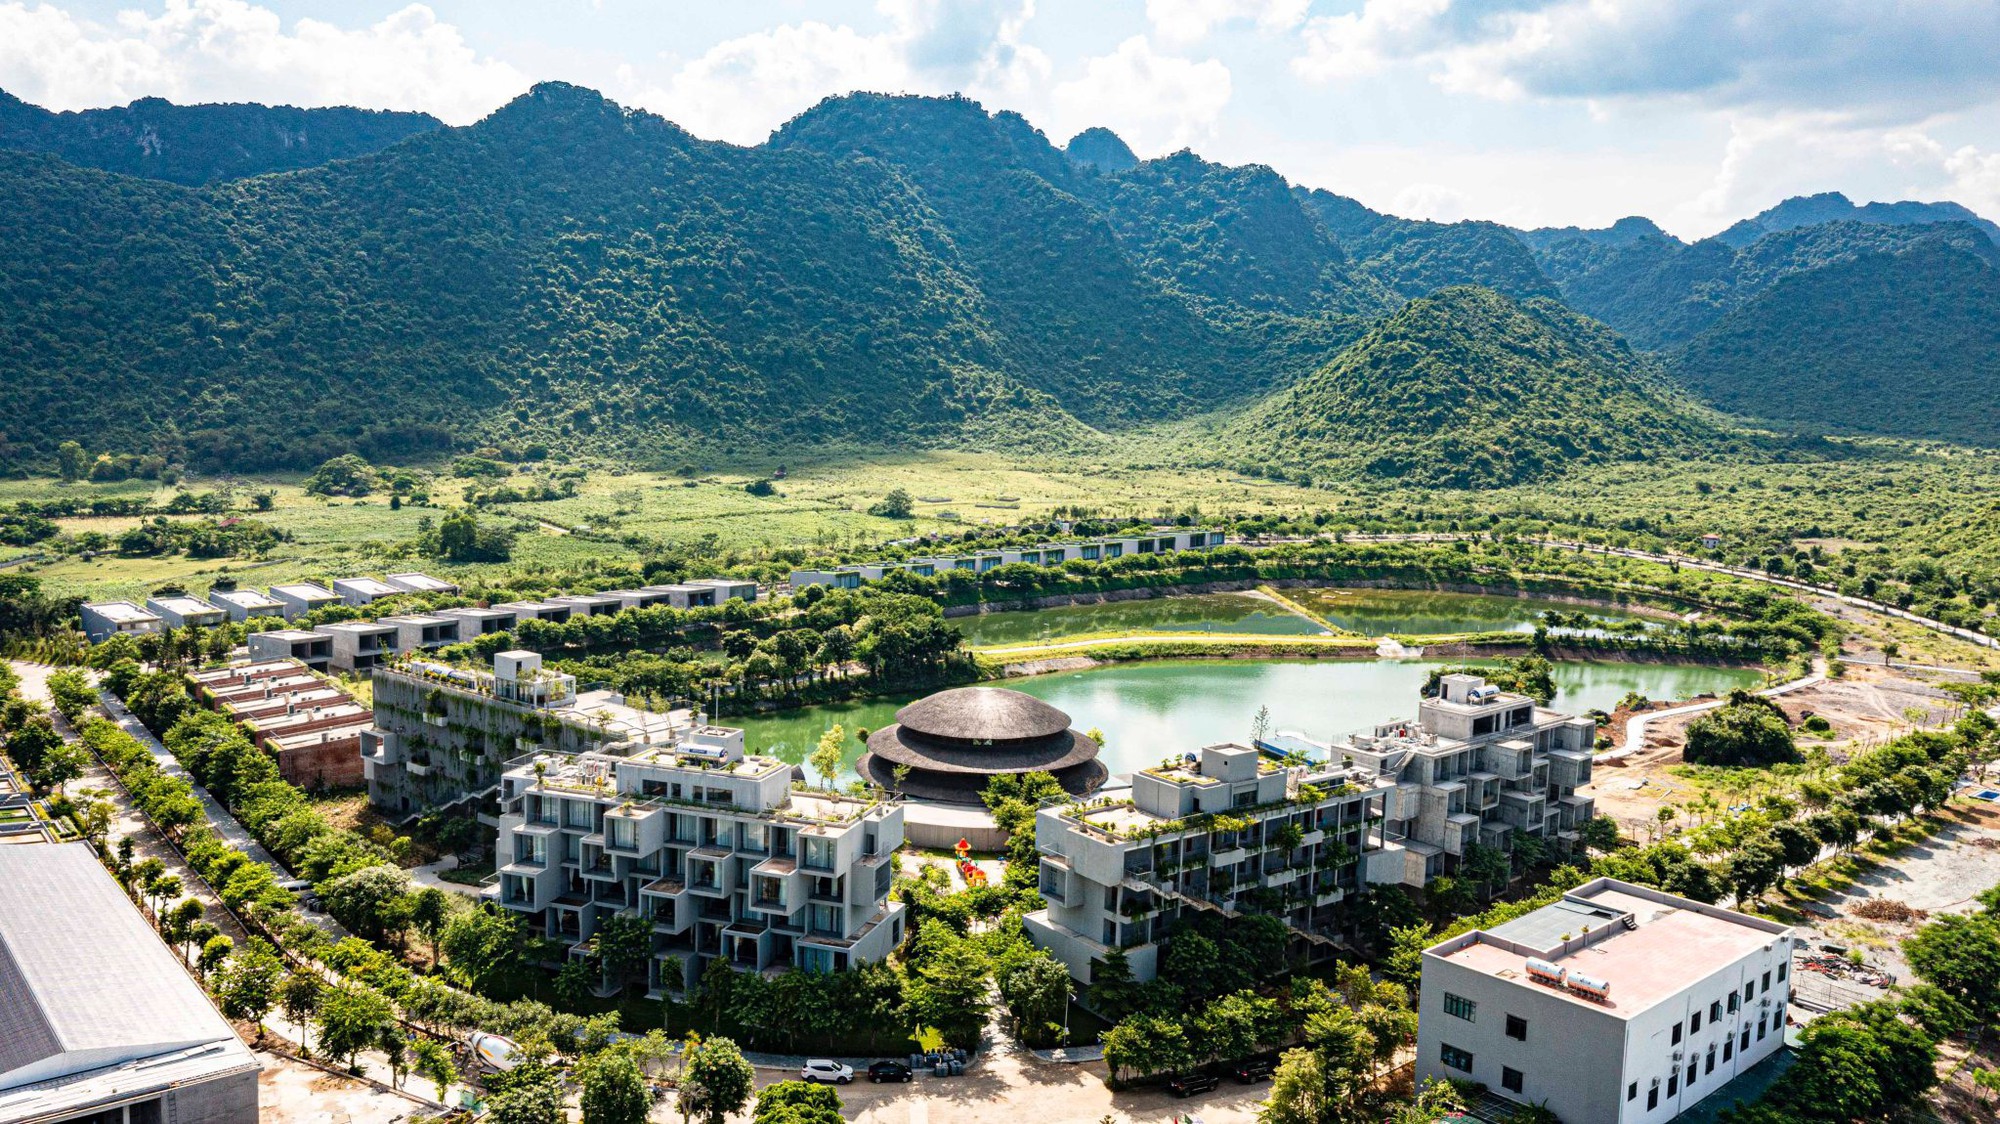 Khu resort ở Ninh Bình: Bản hòa tấu của những khúc nhạc tre, có Nhà tre lớn bậc nhất Đông Nam Á  - Ảnh 1.